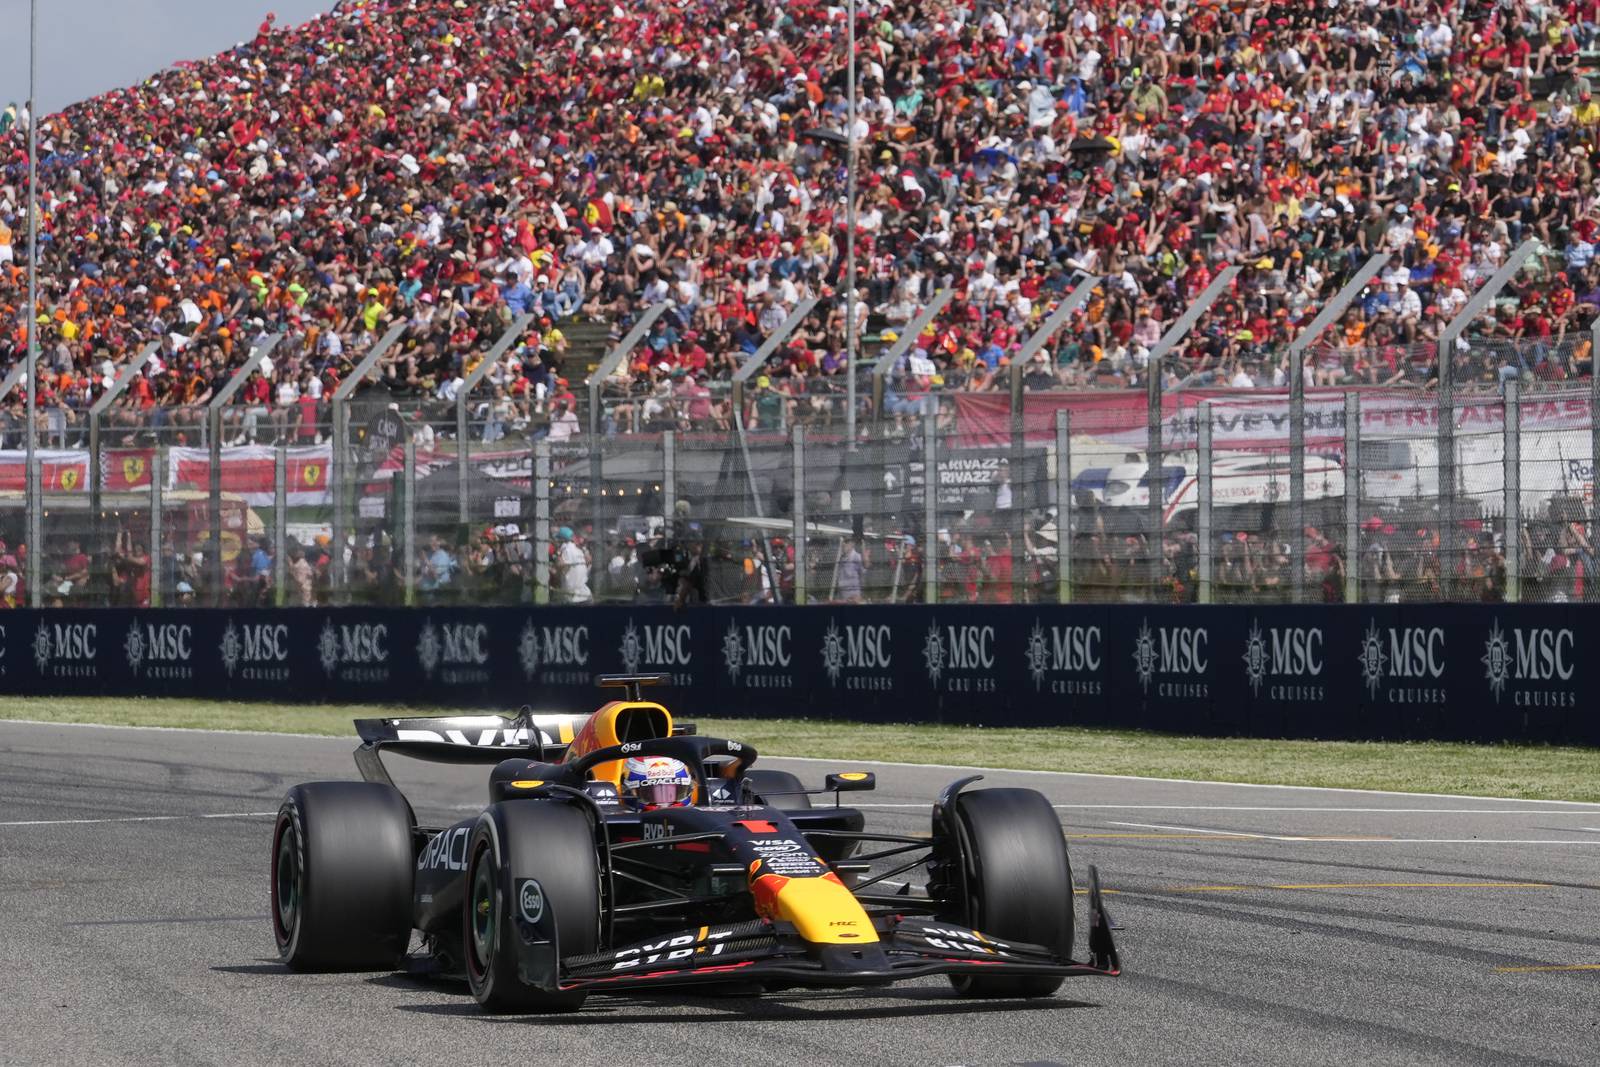 Max Verstappen holds off Lando Norris to win Emilia Romagna Grand Prix